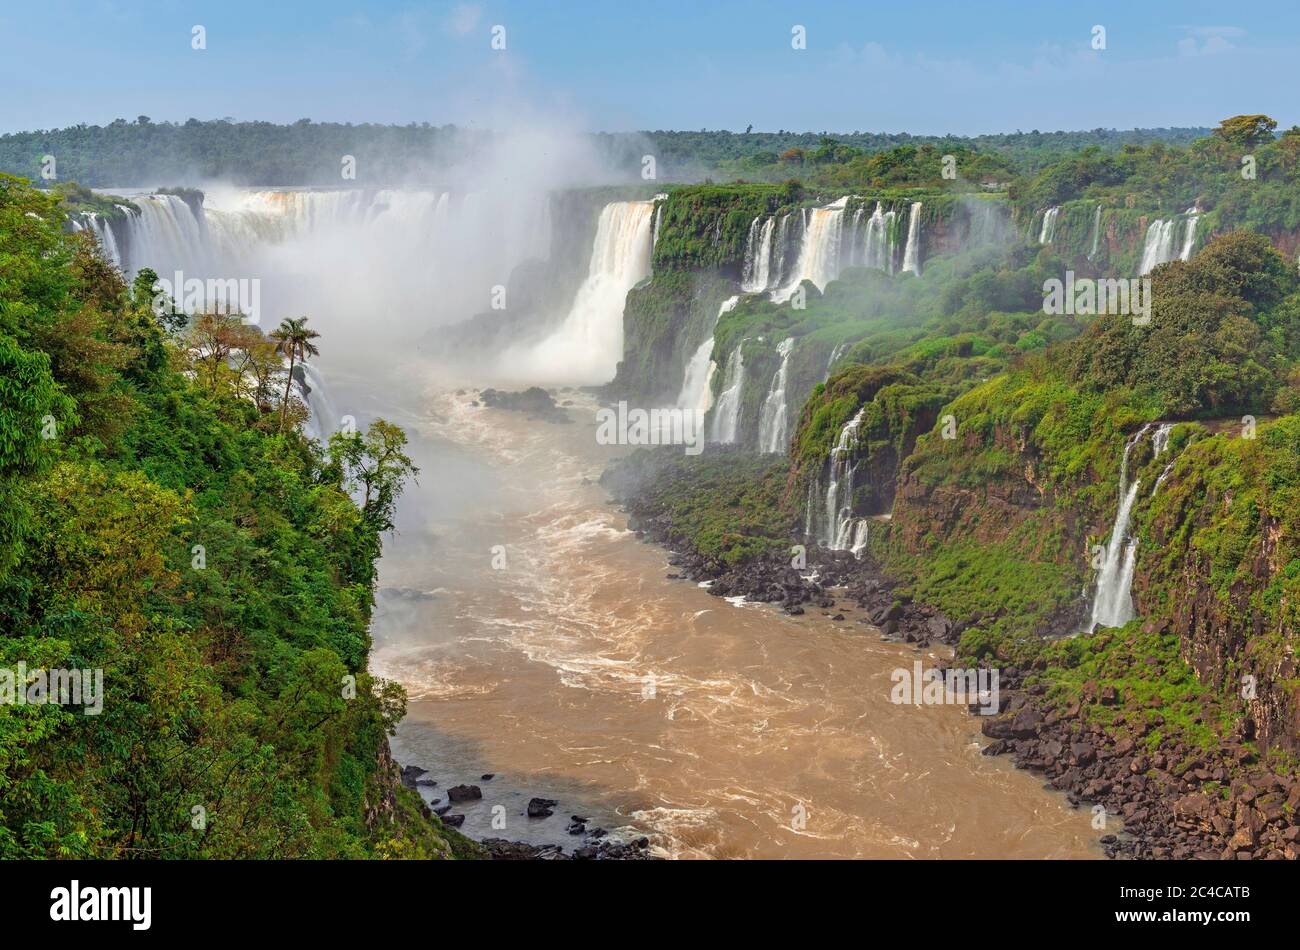 Vue aérienne sur les chutes d'Iguazu (Iguaçu en portugais) et la forêt tropicale du Brésil. Banque D'Images